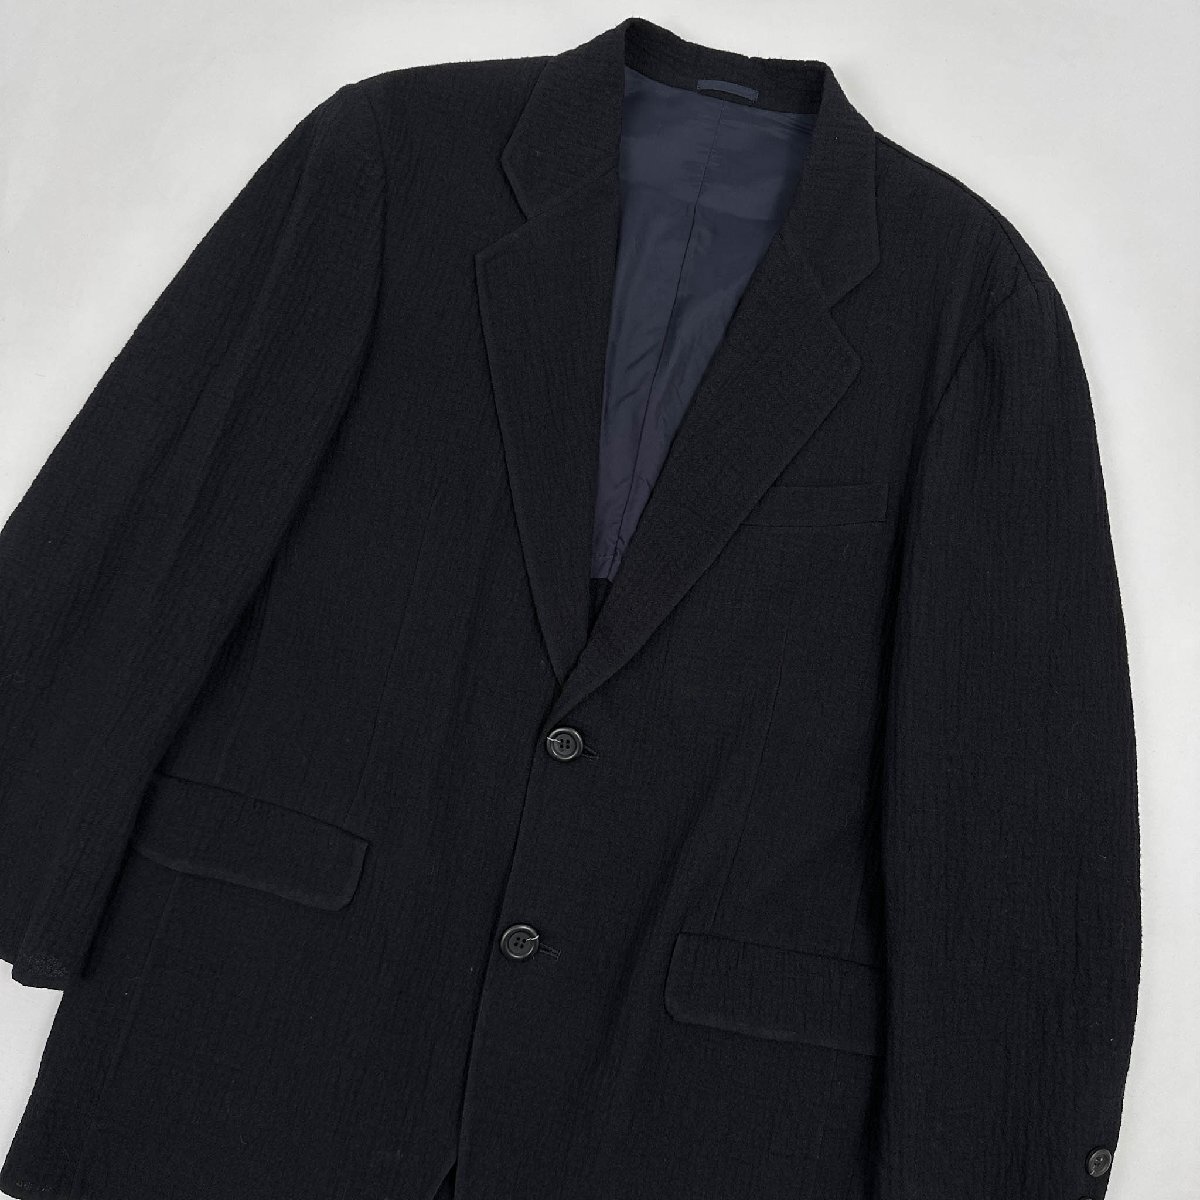 JAEGER LONDON イエーガー シルク混 ウール テーラードジャケット ブレザー サイズ M/薄手/ブラック メンズ 紳士 日本製_画像2